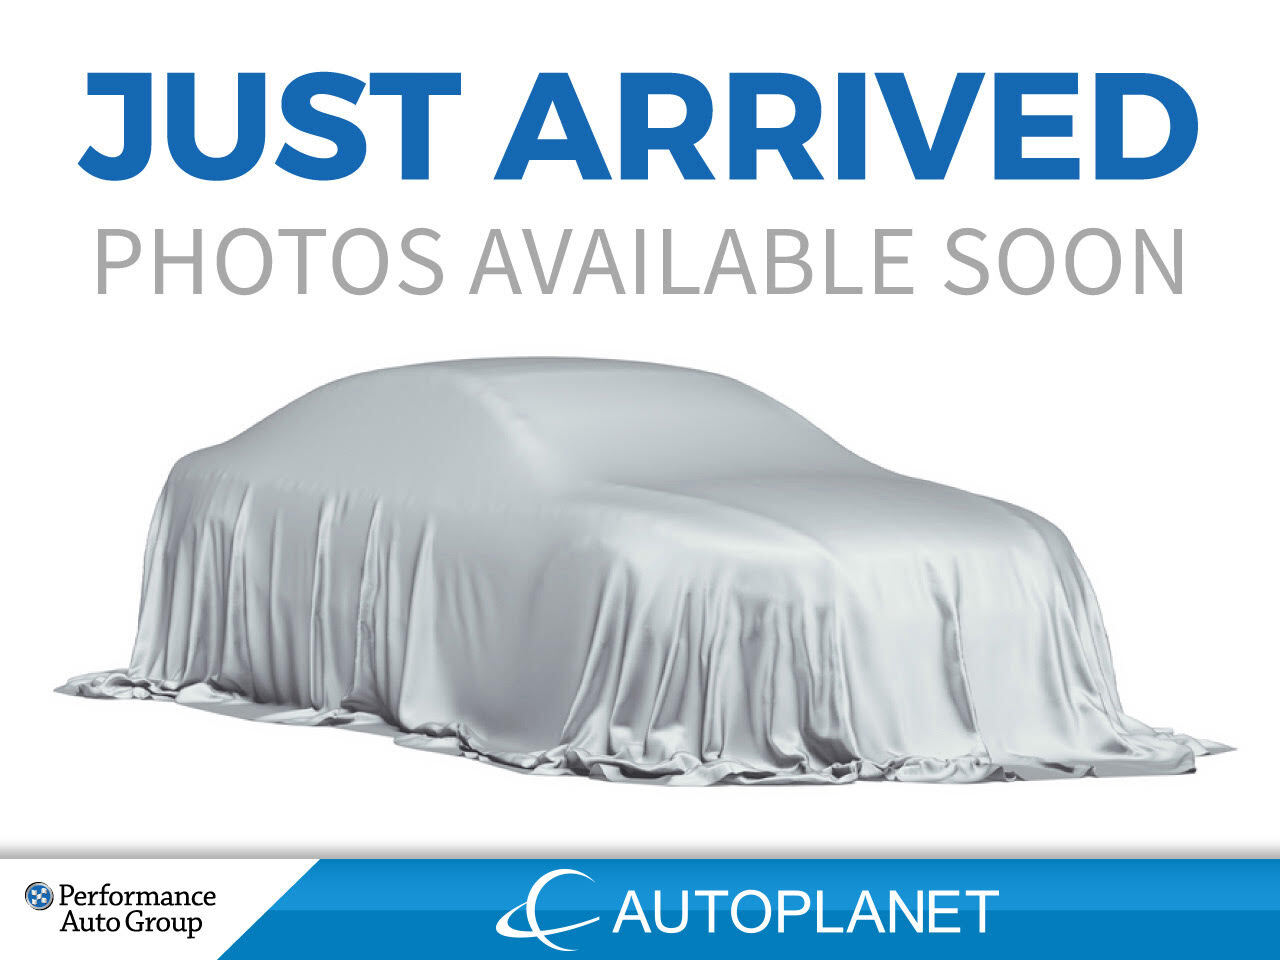 2021 Chevrolet Spark LT, Hatchback, Back Up Cam, Apple CarPlay, 1.4L!